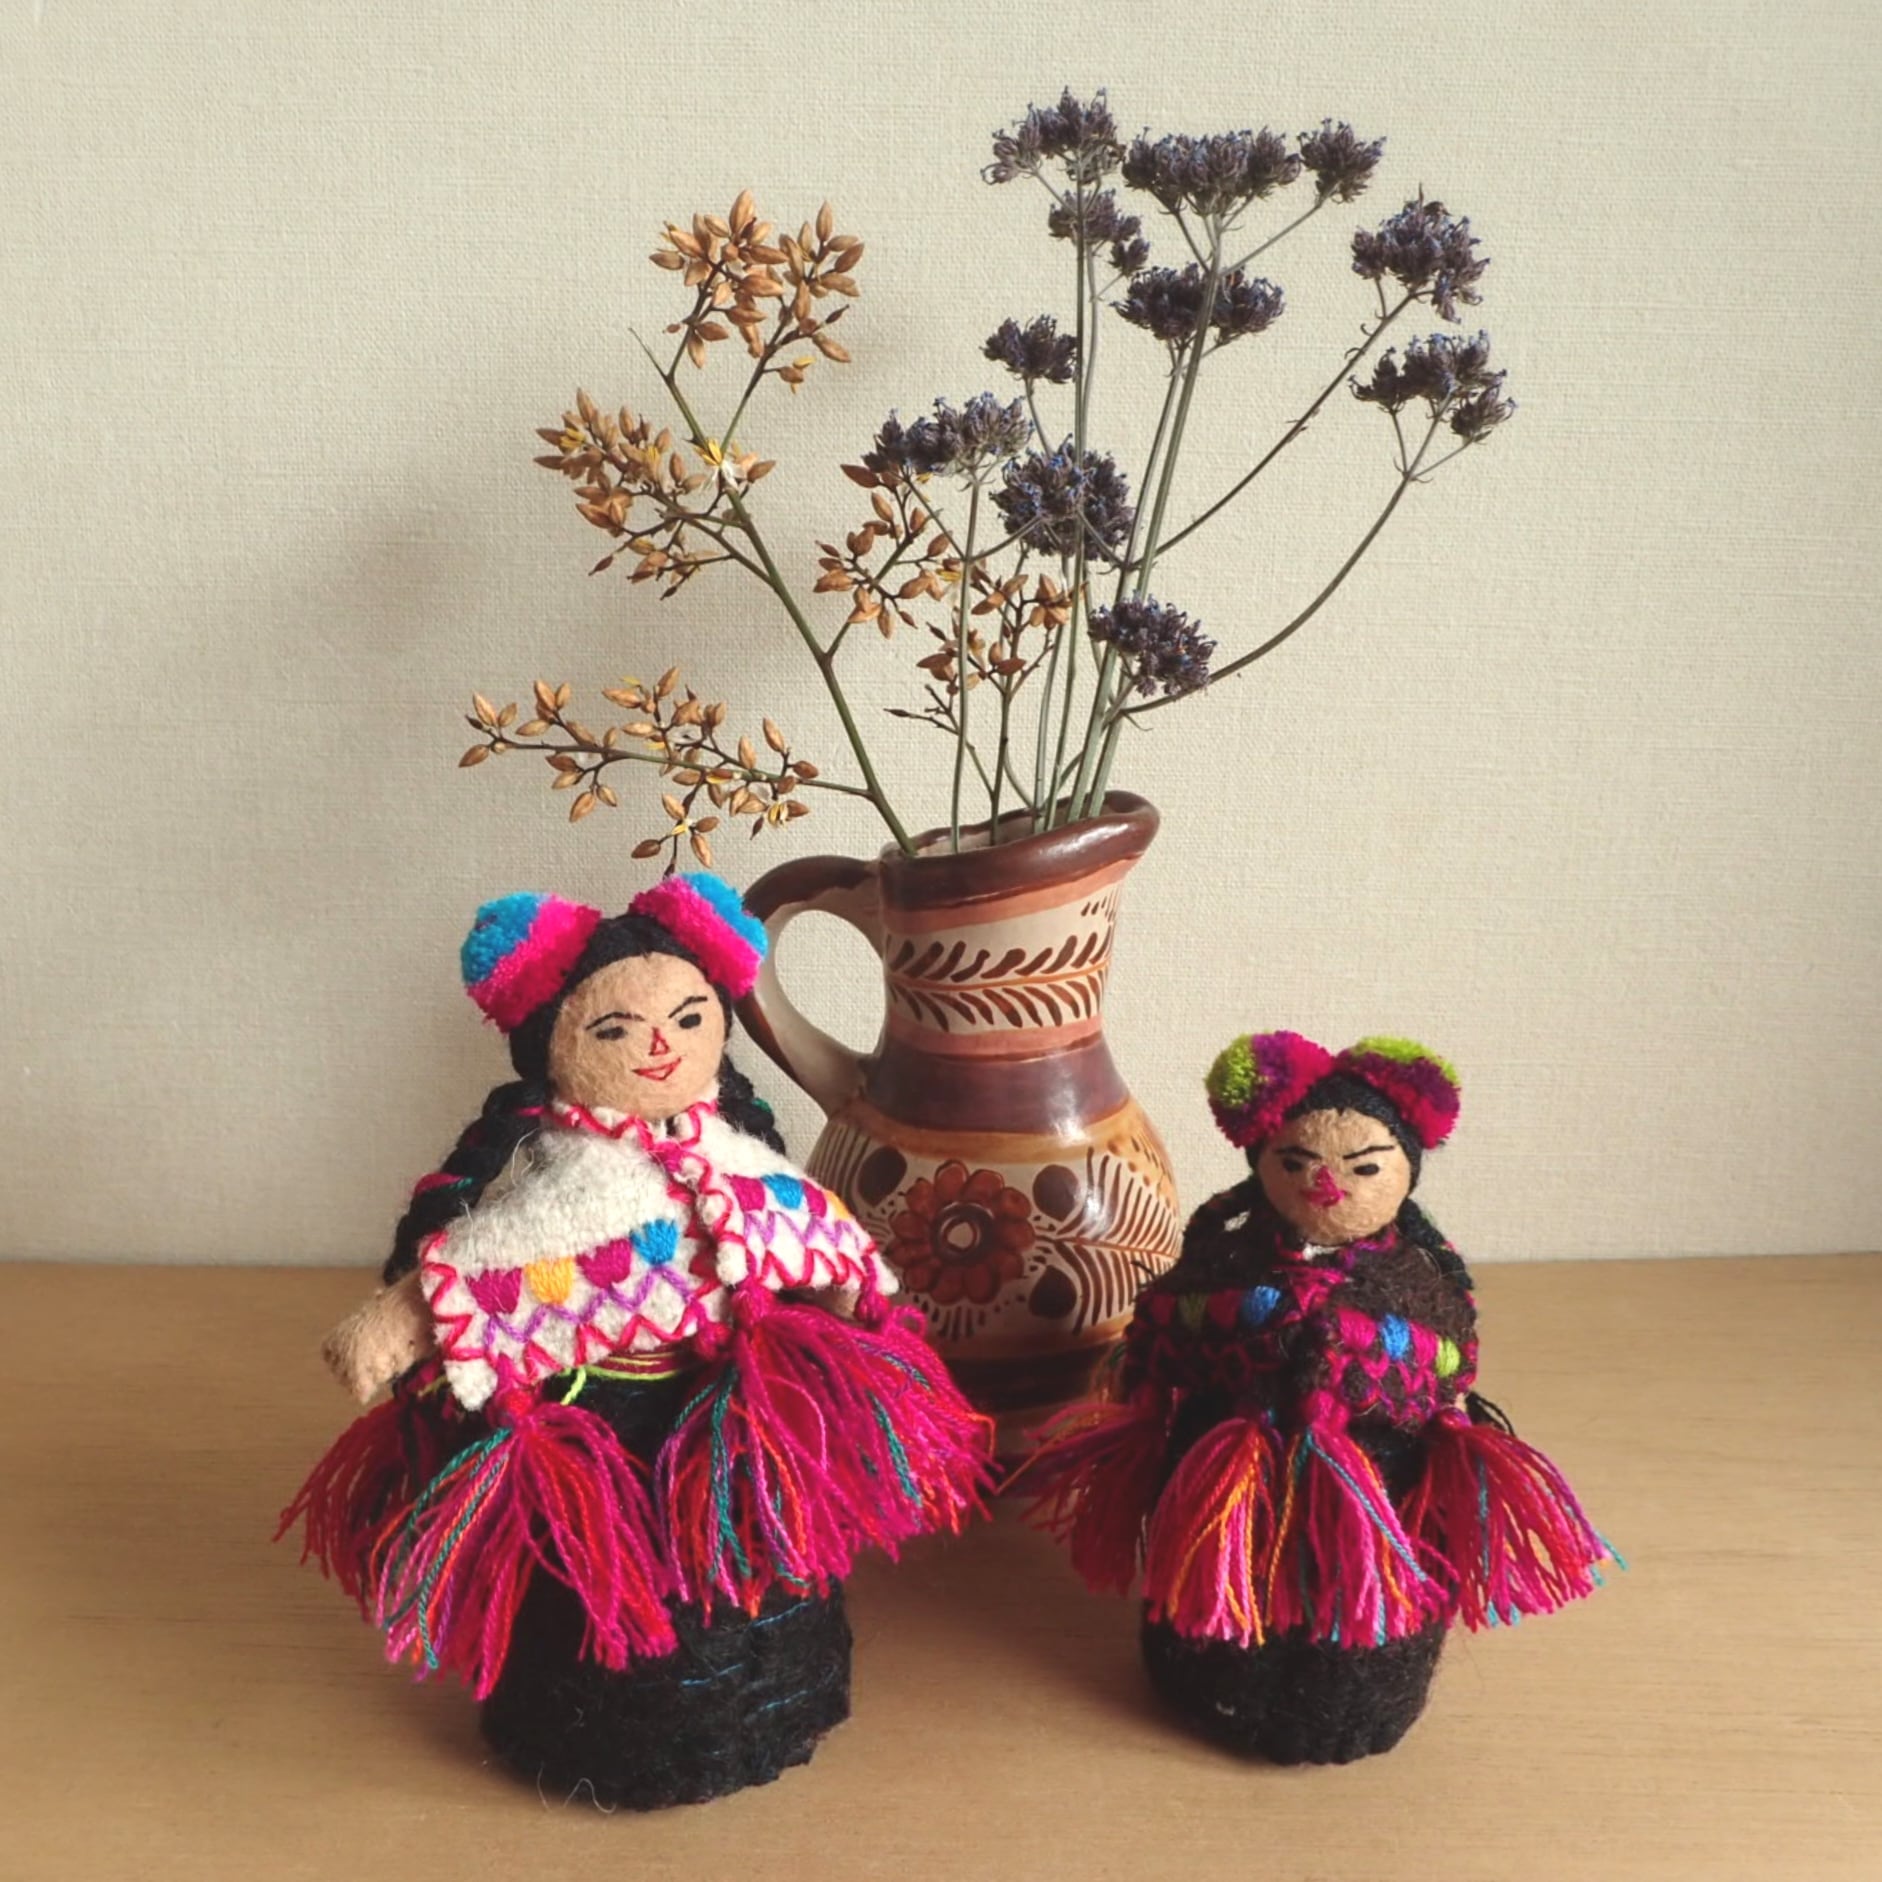 メキシコ サンファンチャムラ民族衣装人形・M gururi